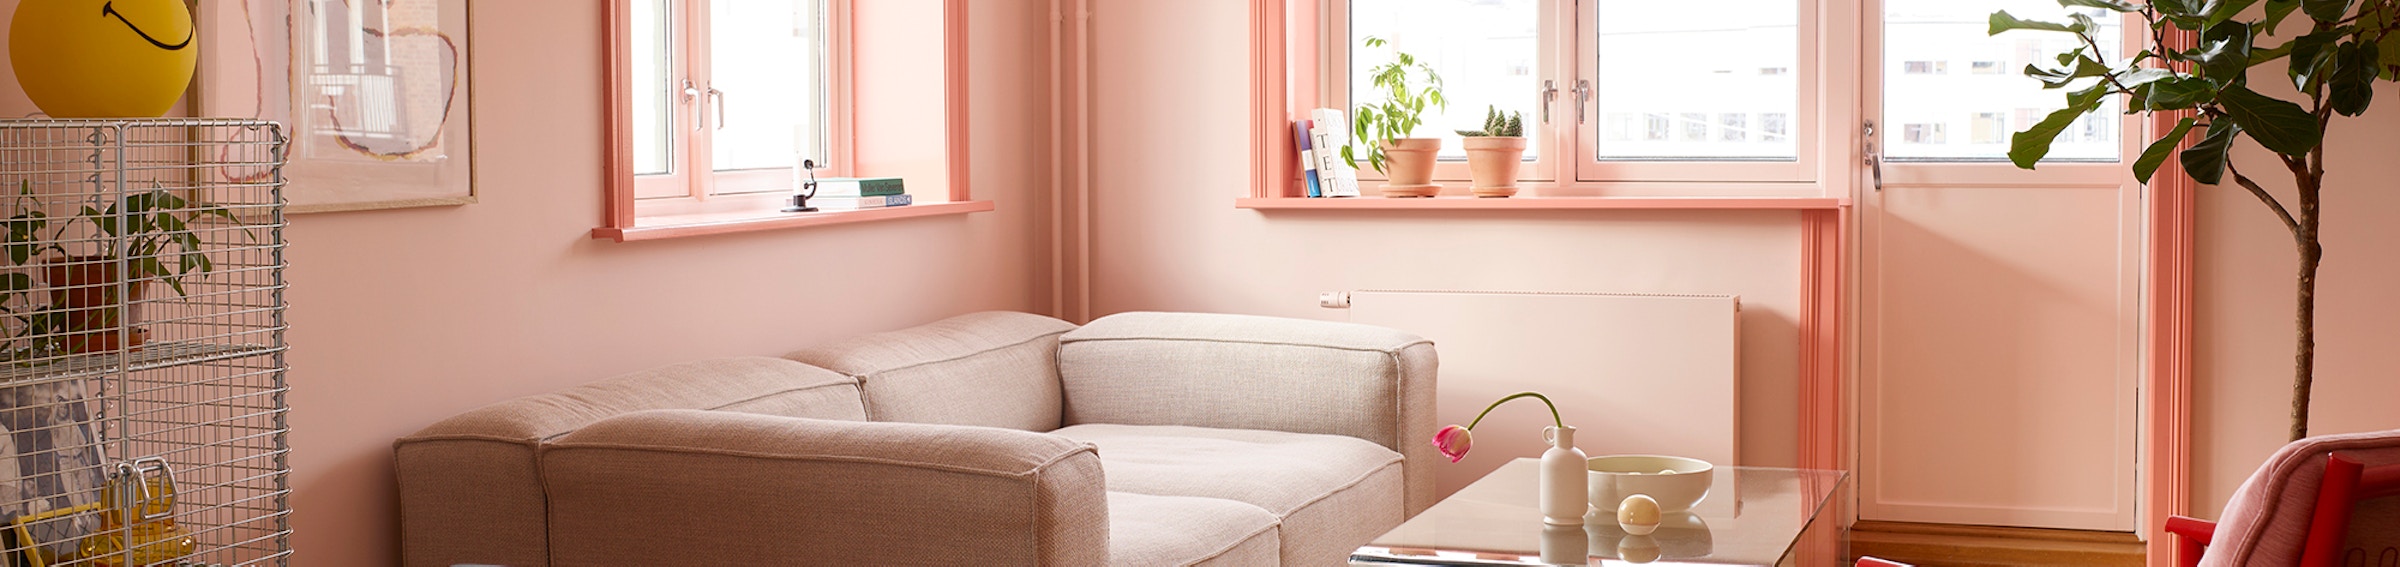 Rosa stue med rosa lister og ulike stuemøbler som beige sofa og rød/rosa stol.